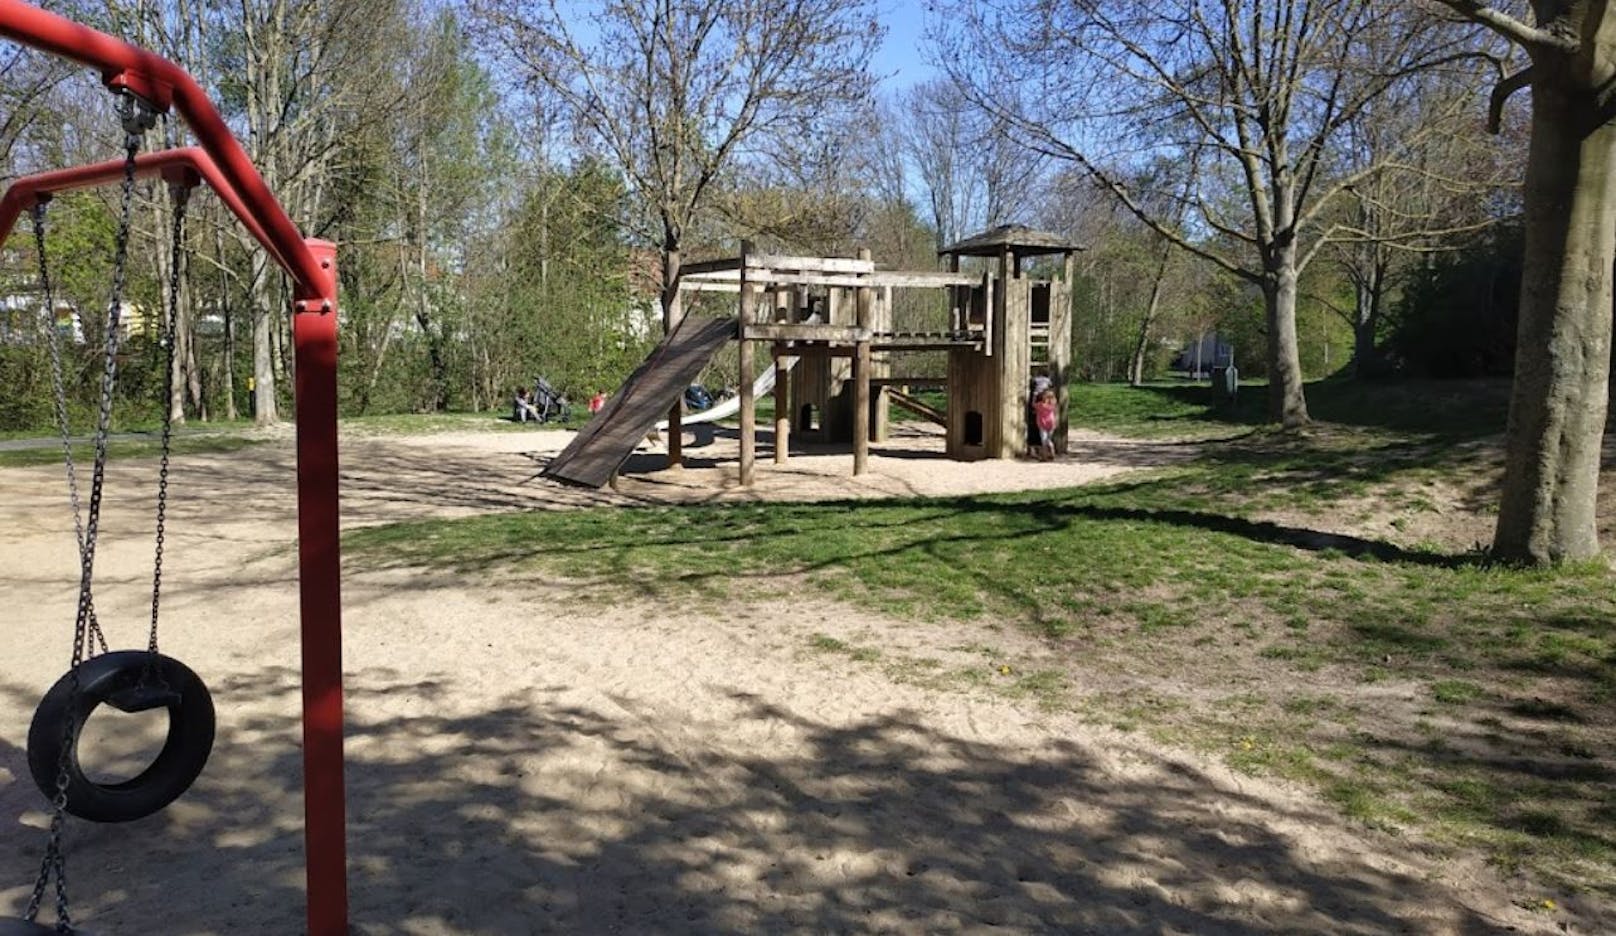 In der Nähe dieses Spielplatzes bei dem Fluss Unstrut in Deutschland geschah das Unglück.